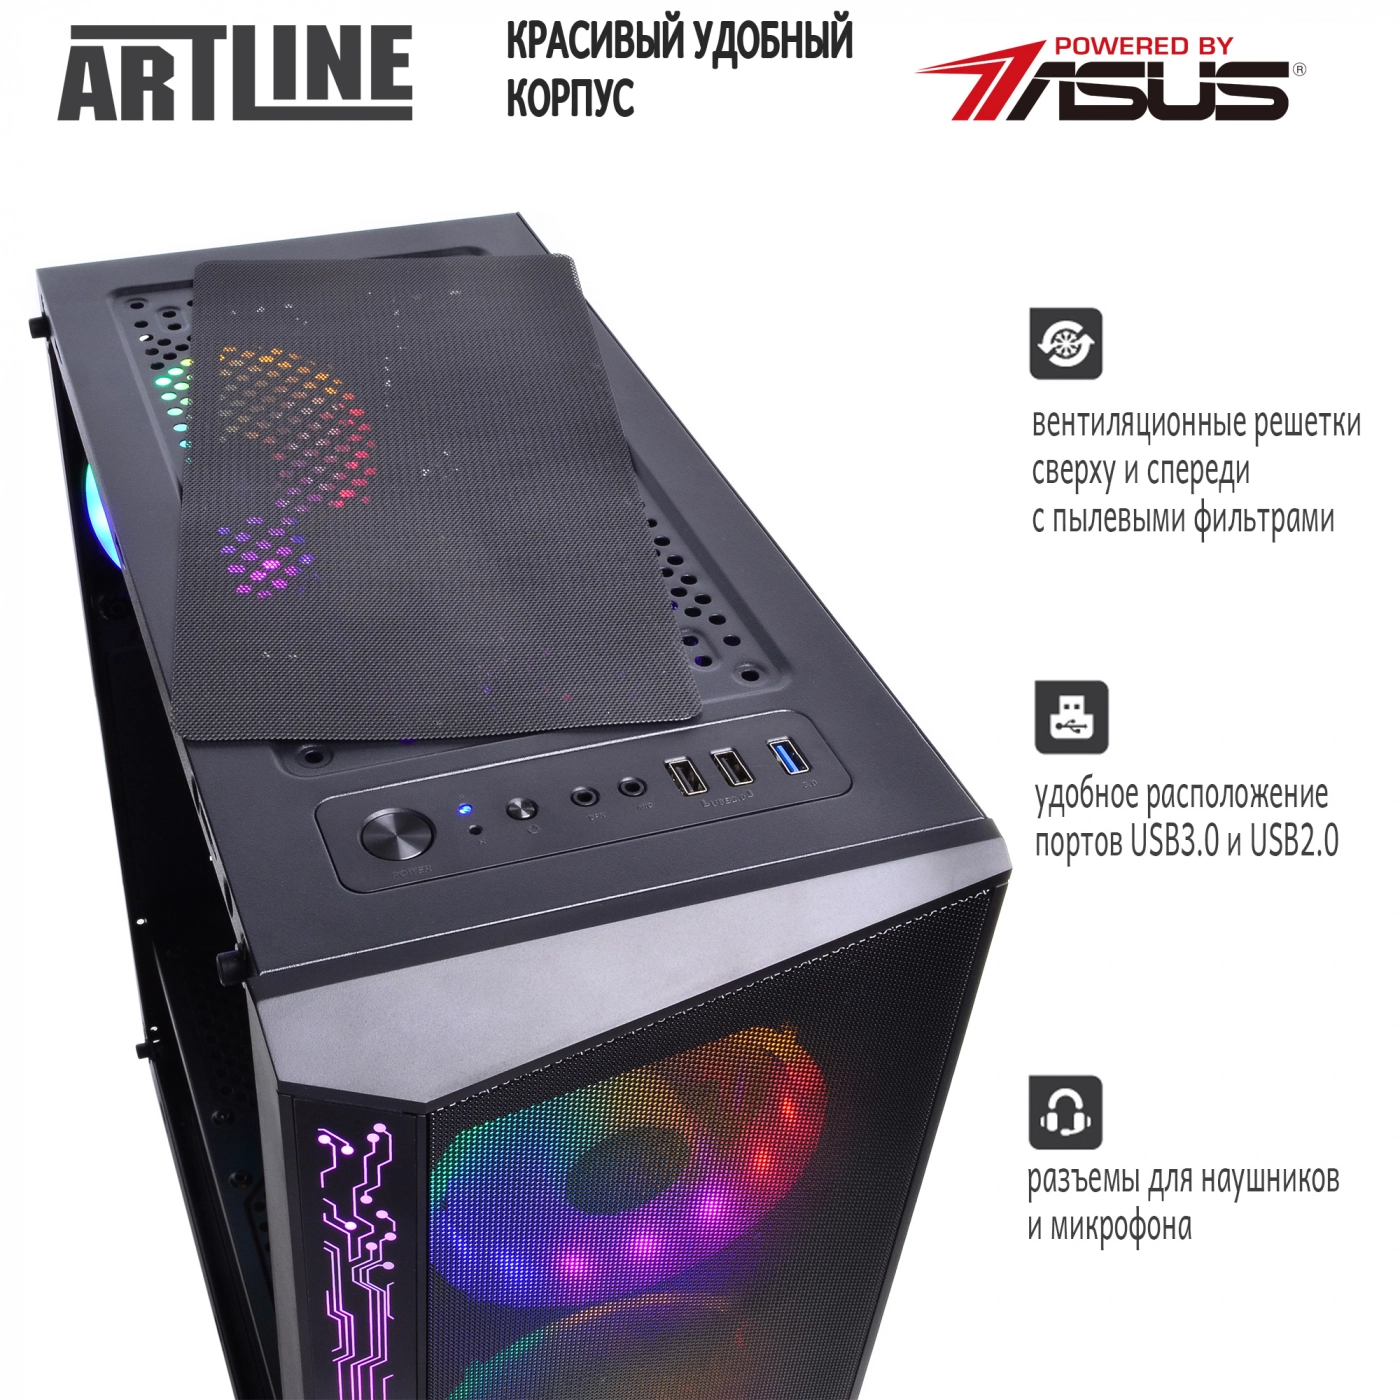 Купить Компьютер ARTLINE Gaming X35v33 - фото 5